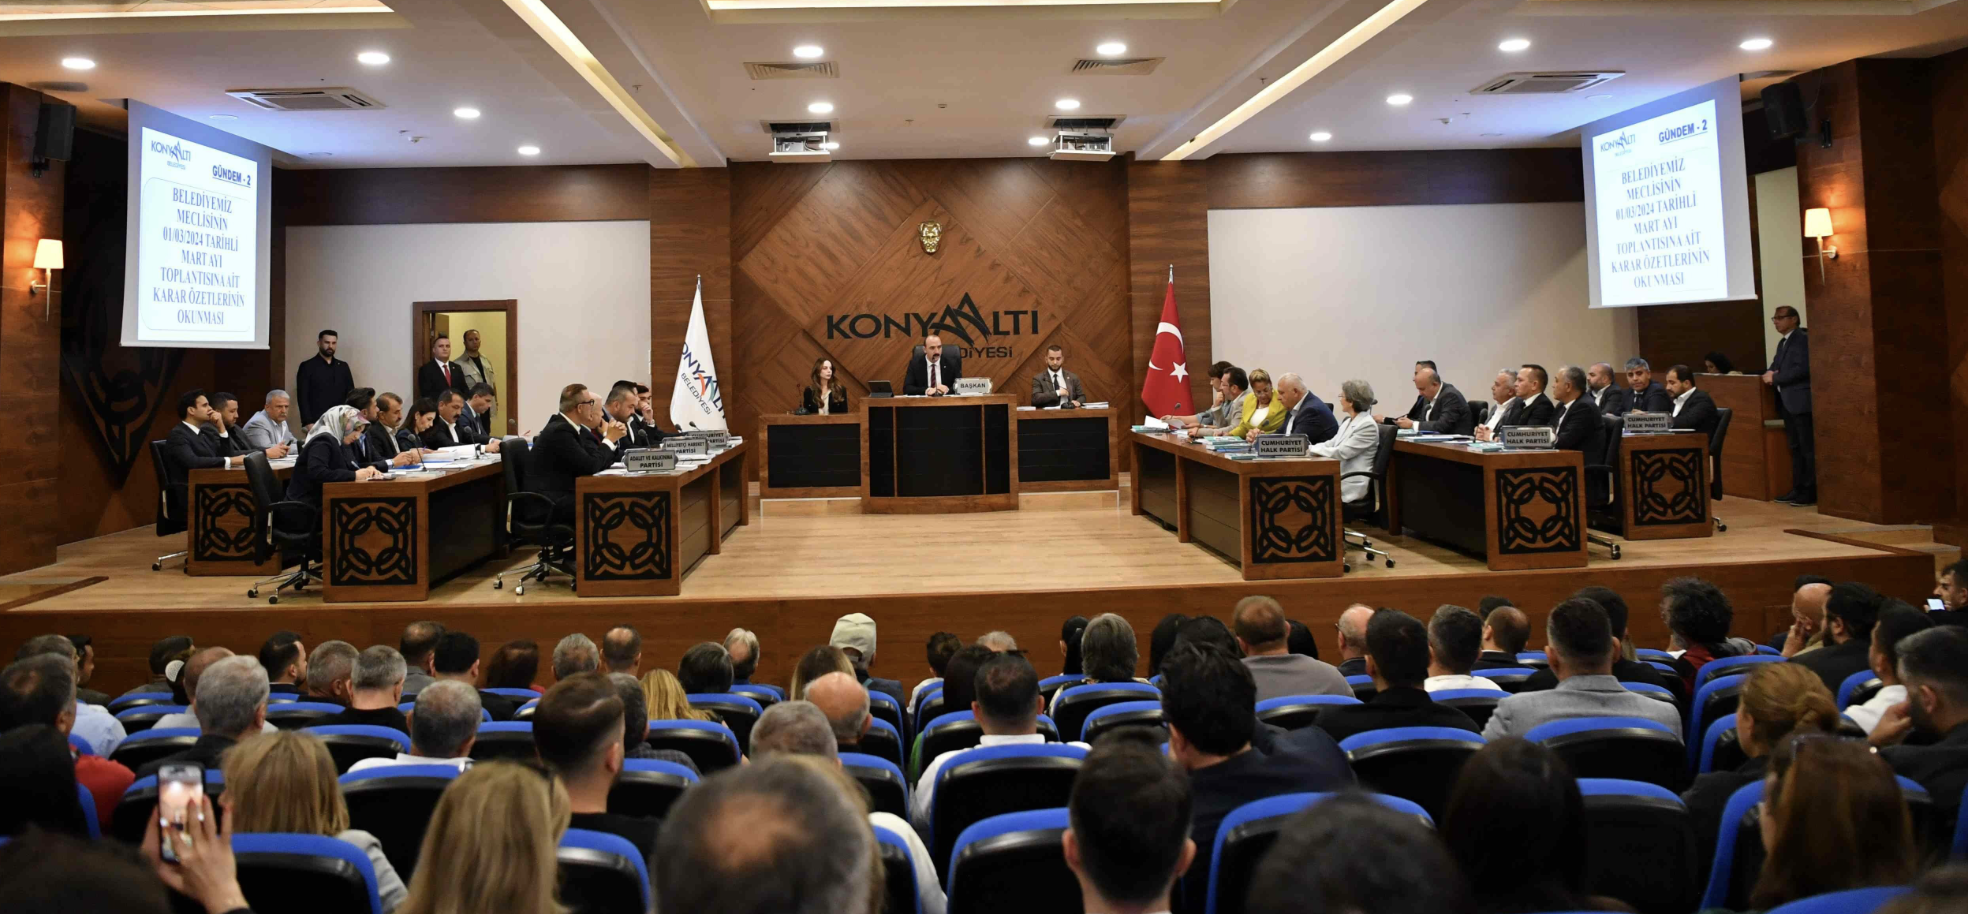 Konyaaltı Belediyesi'nde yılın ilk meclisi toplandı: Meclis üyeleri belirlendi